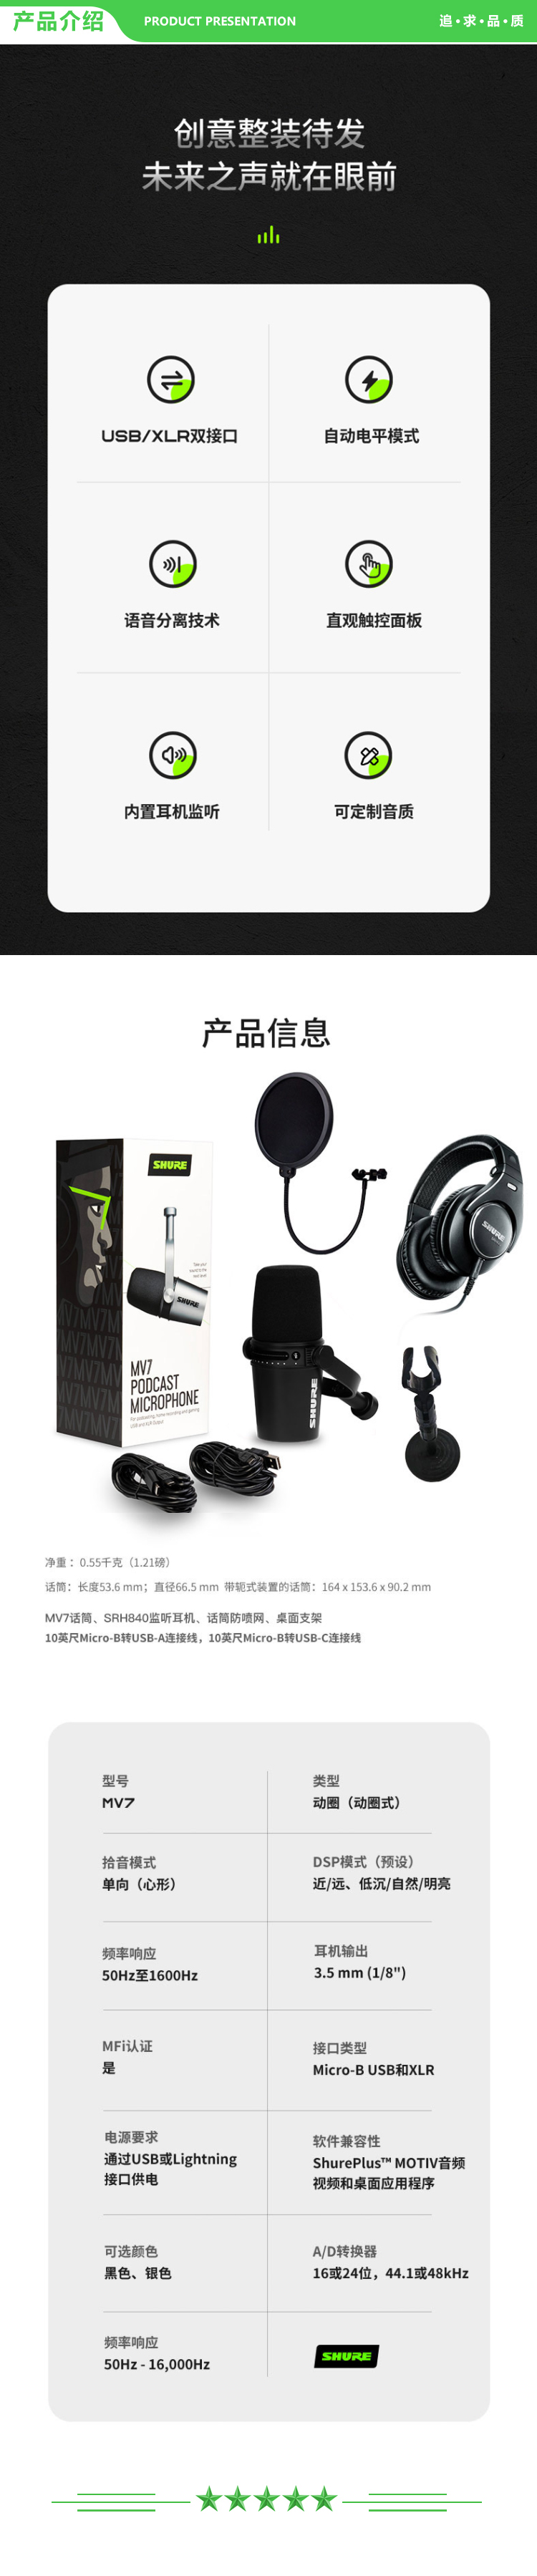 舒尔 Shure MV7 黑色动圈麦克风 搭配SRH840头戴式专业监听耳机 语音分离技术专业录音麦克风耳机套装 .jpg